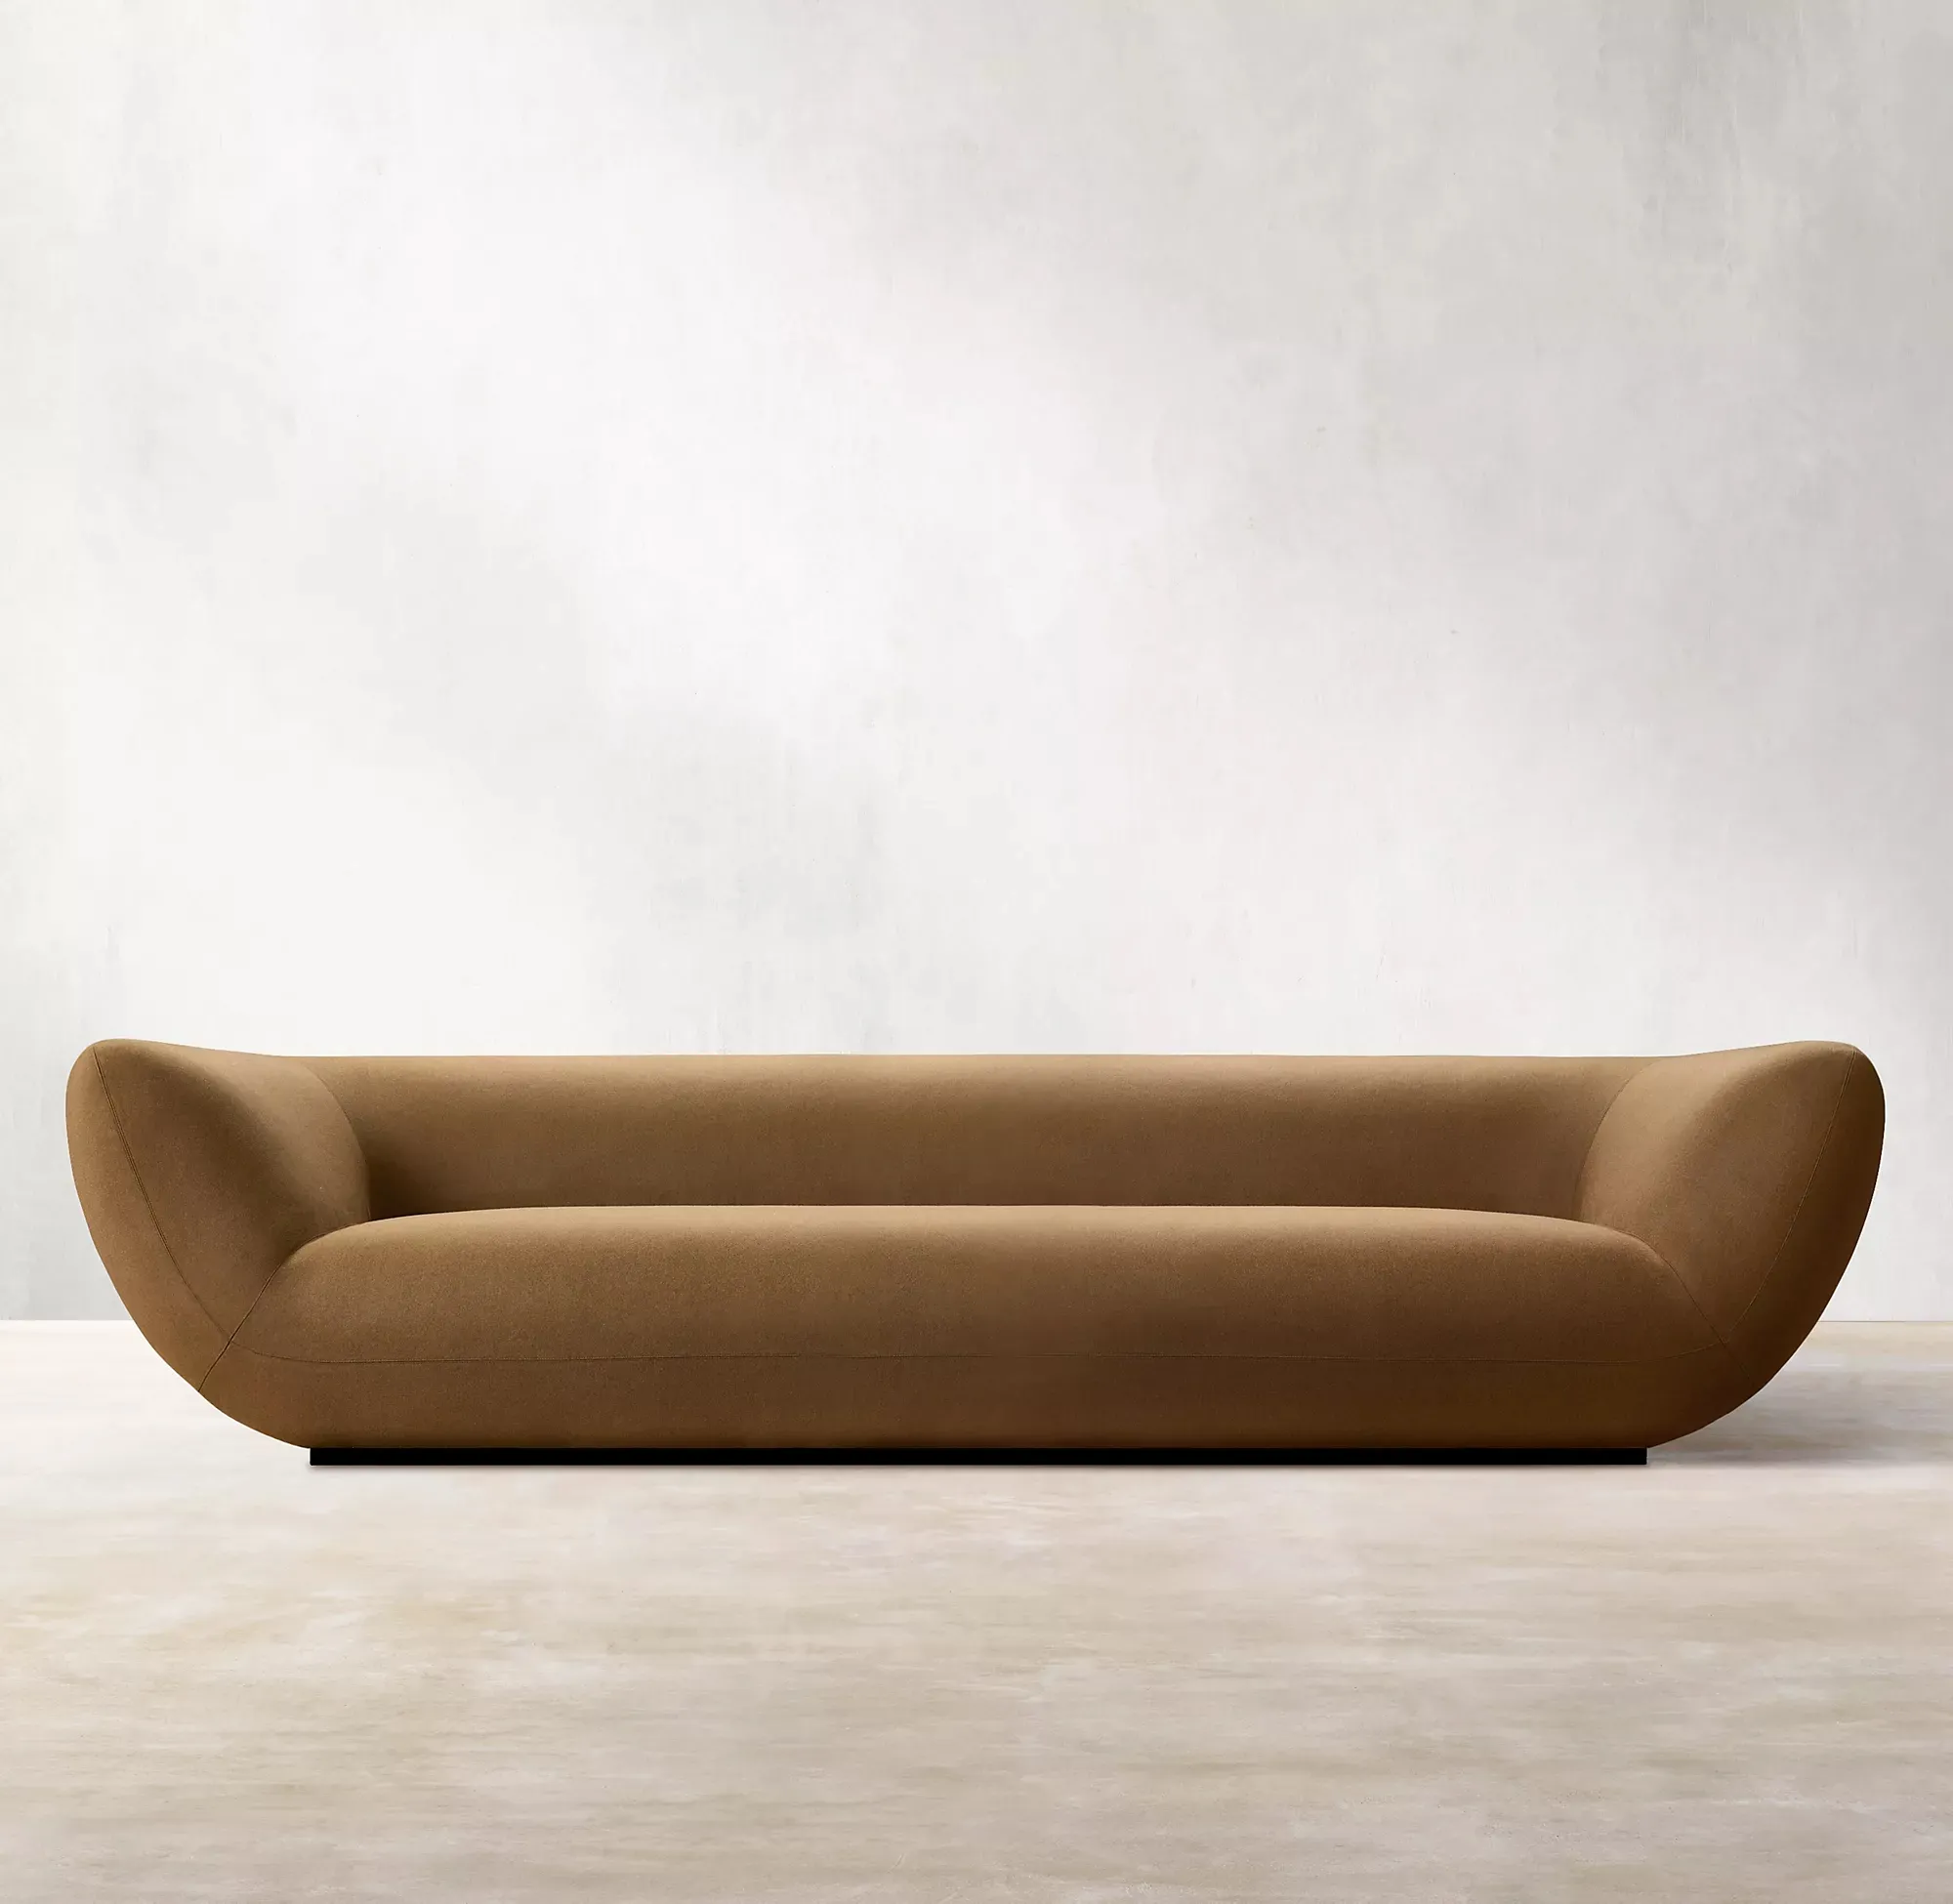 Luxus klassisches Design Sofa Innen Wohnzimmer Möbel zeitgenössische Polsterung Couches Sofas